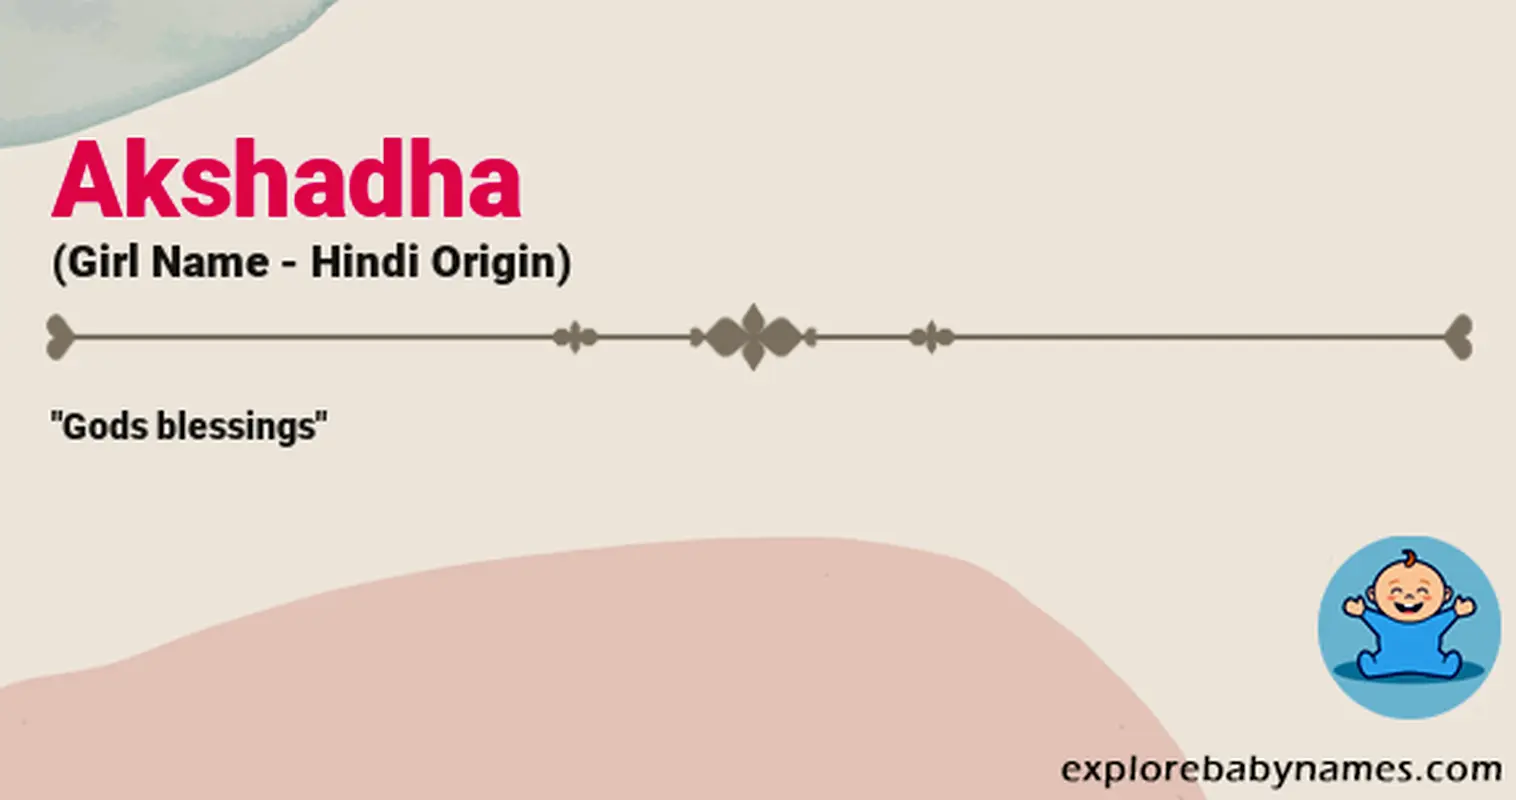 Meaning of Akshadha